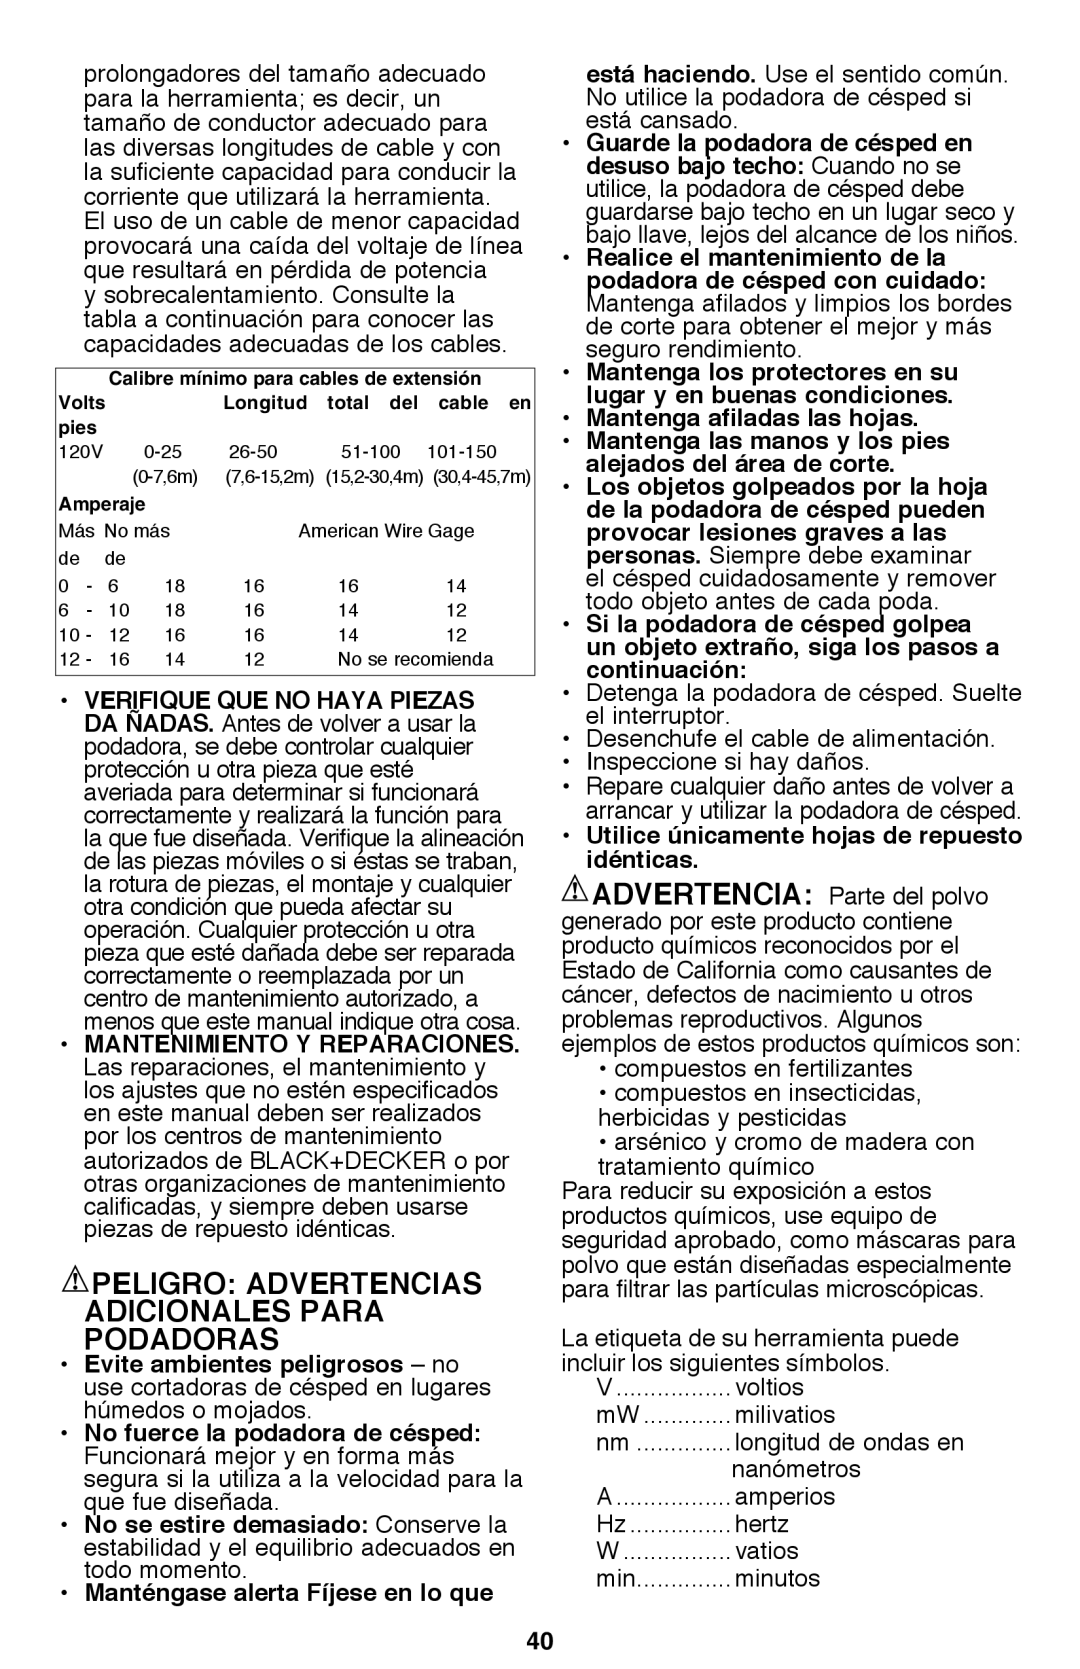 Black & Decker CM2040 instruction manual Peligro Advertencias Adicionales Para Podadoras 